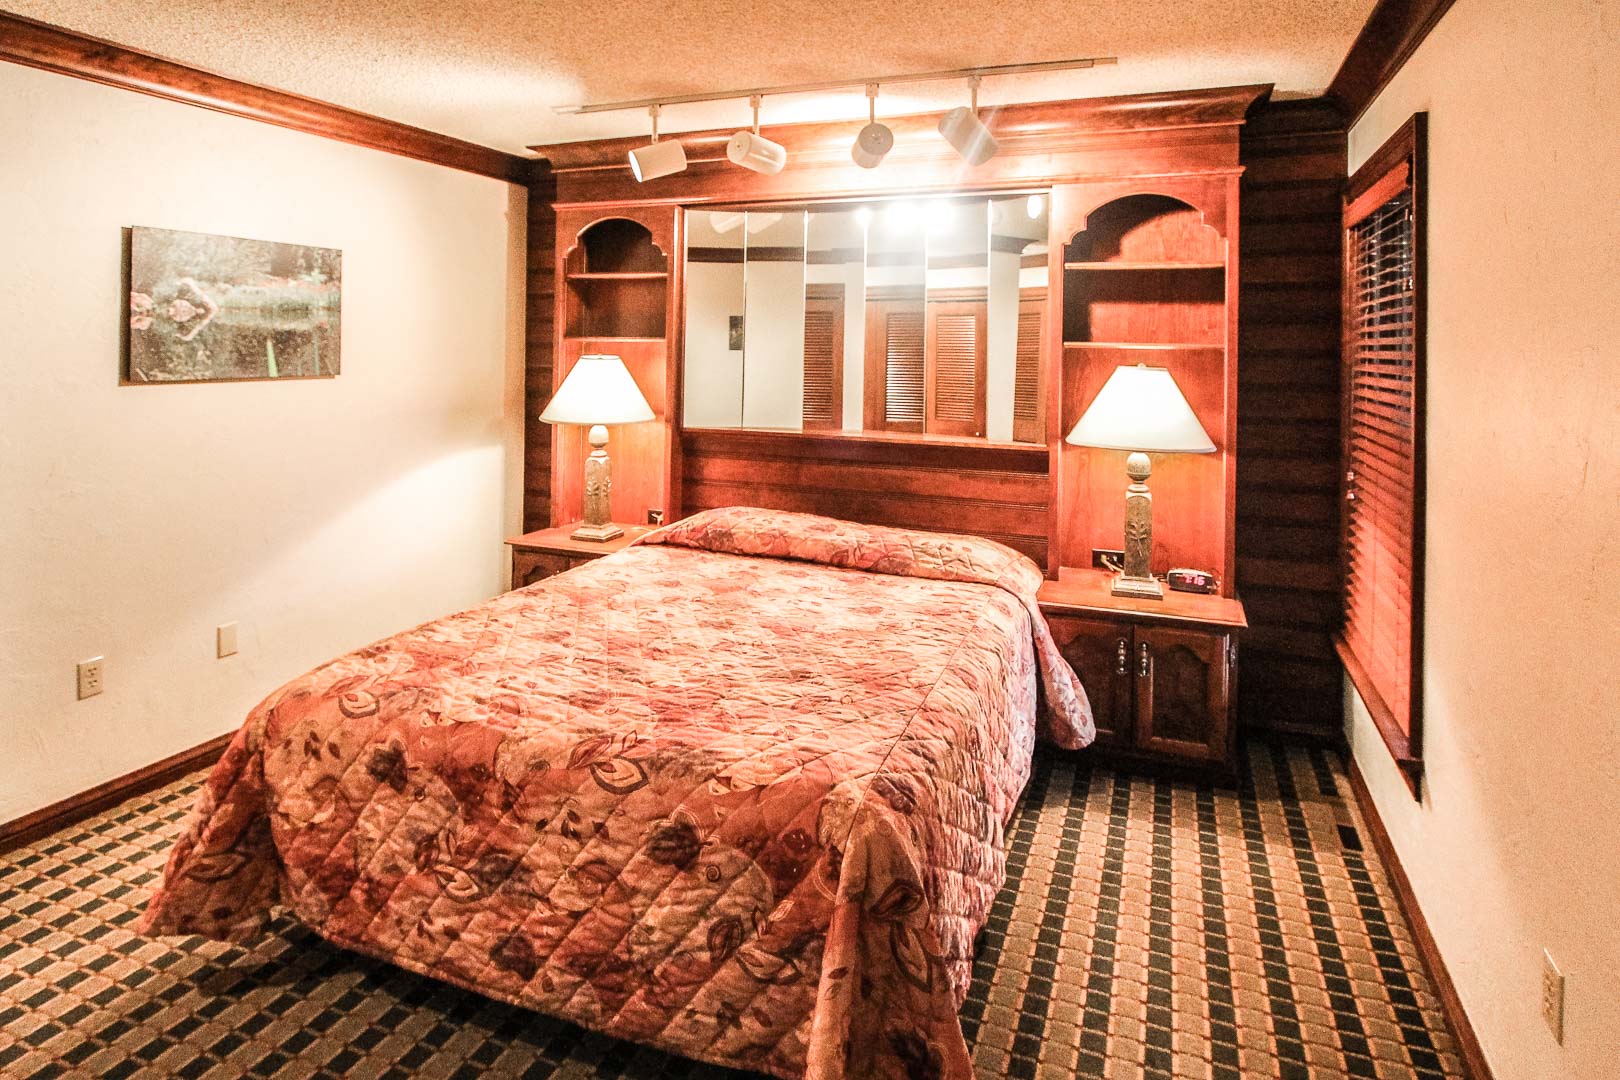 A cozy bedroom at VRI's Sunburst Resort in Steamboat Springs, Colorado.